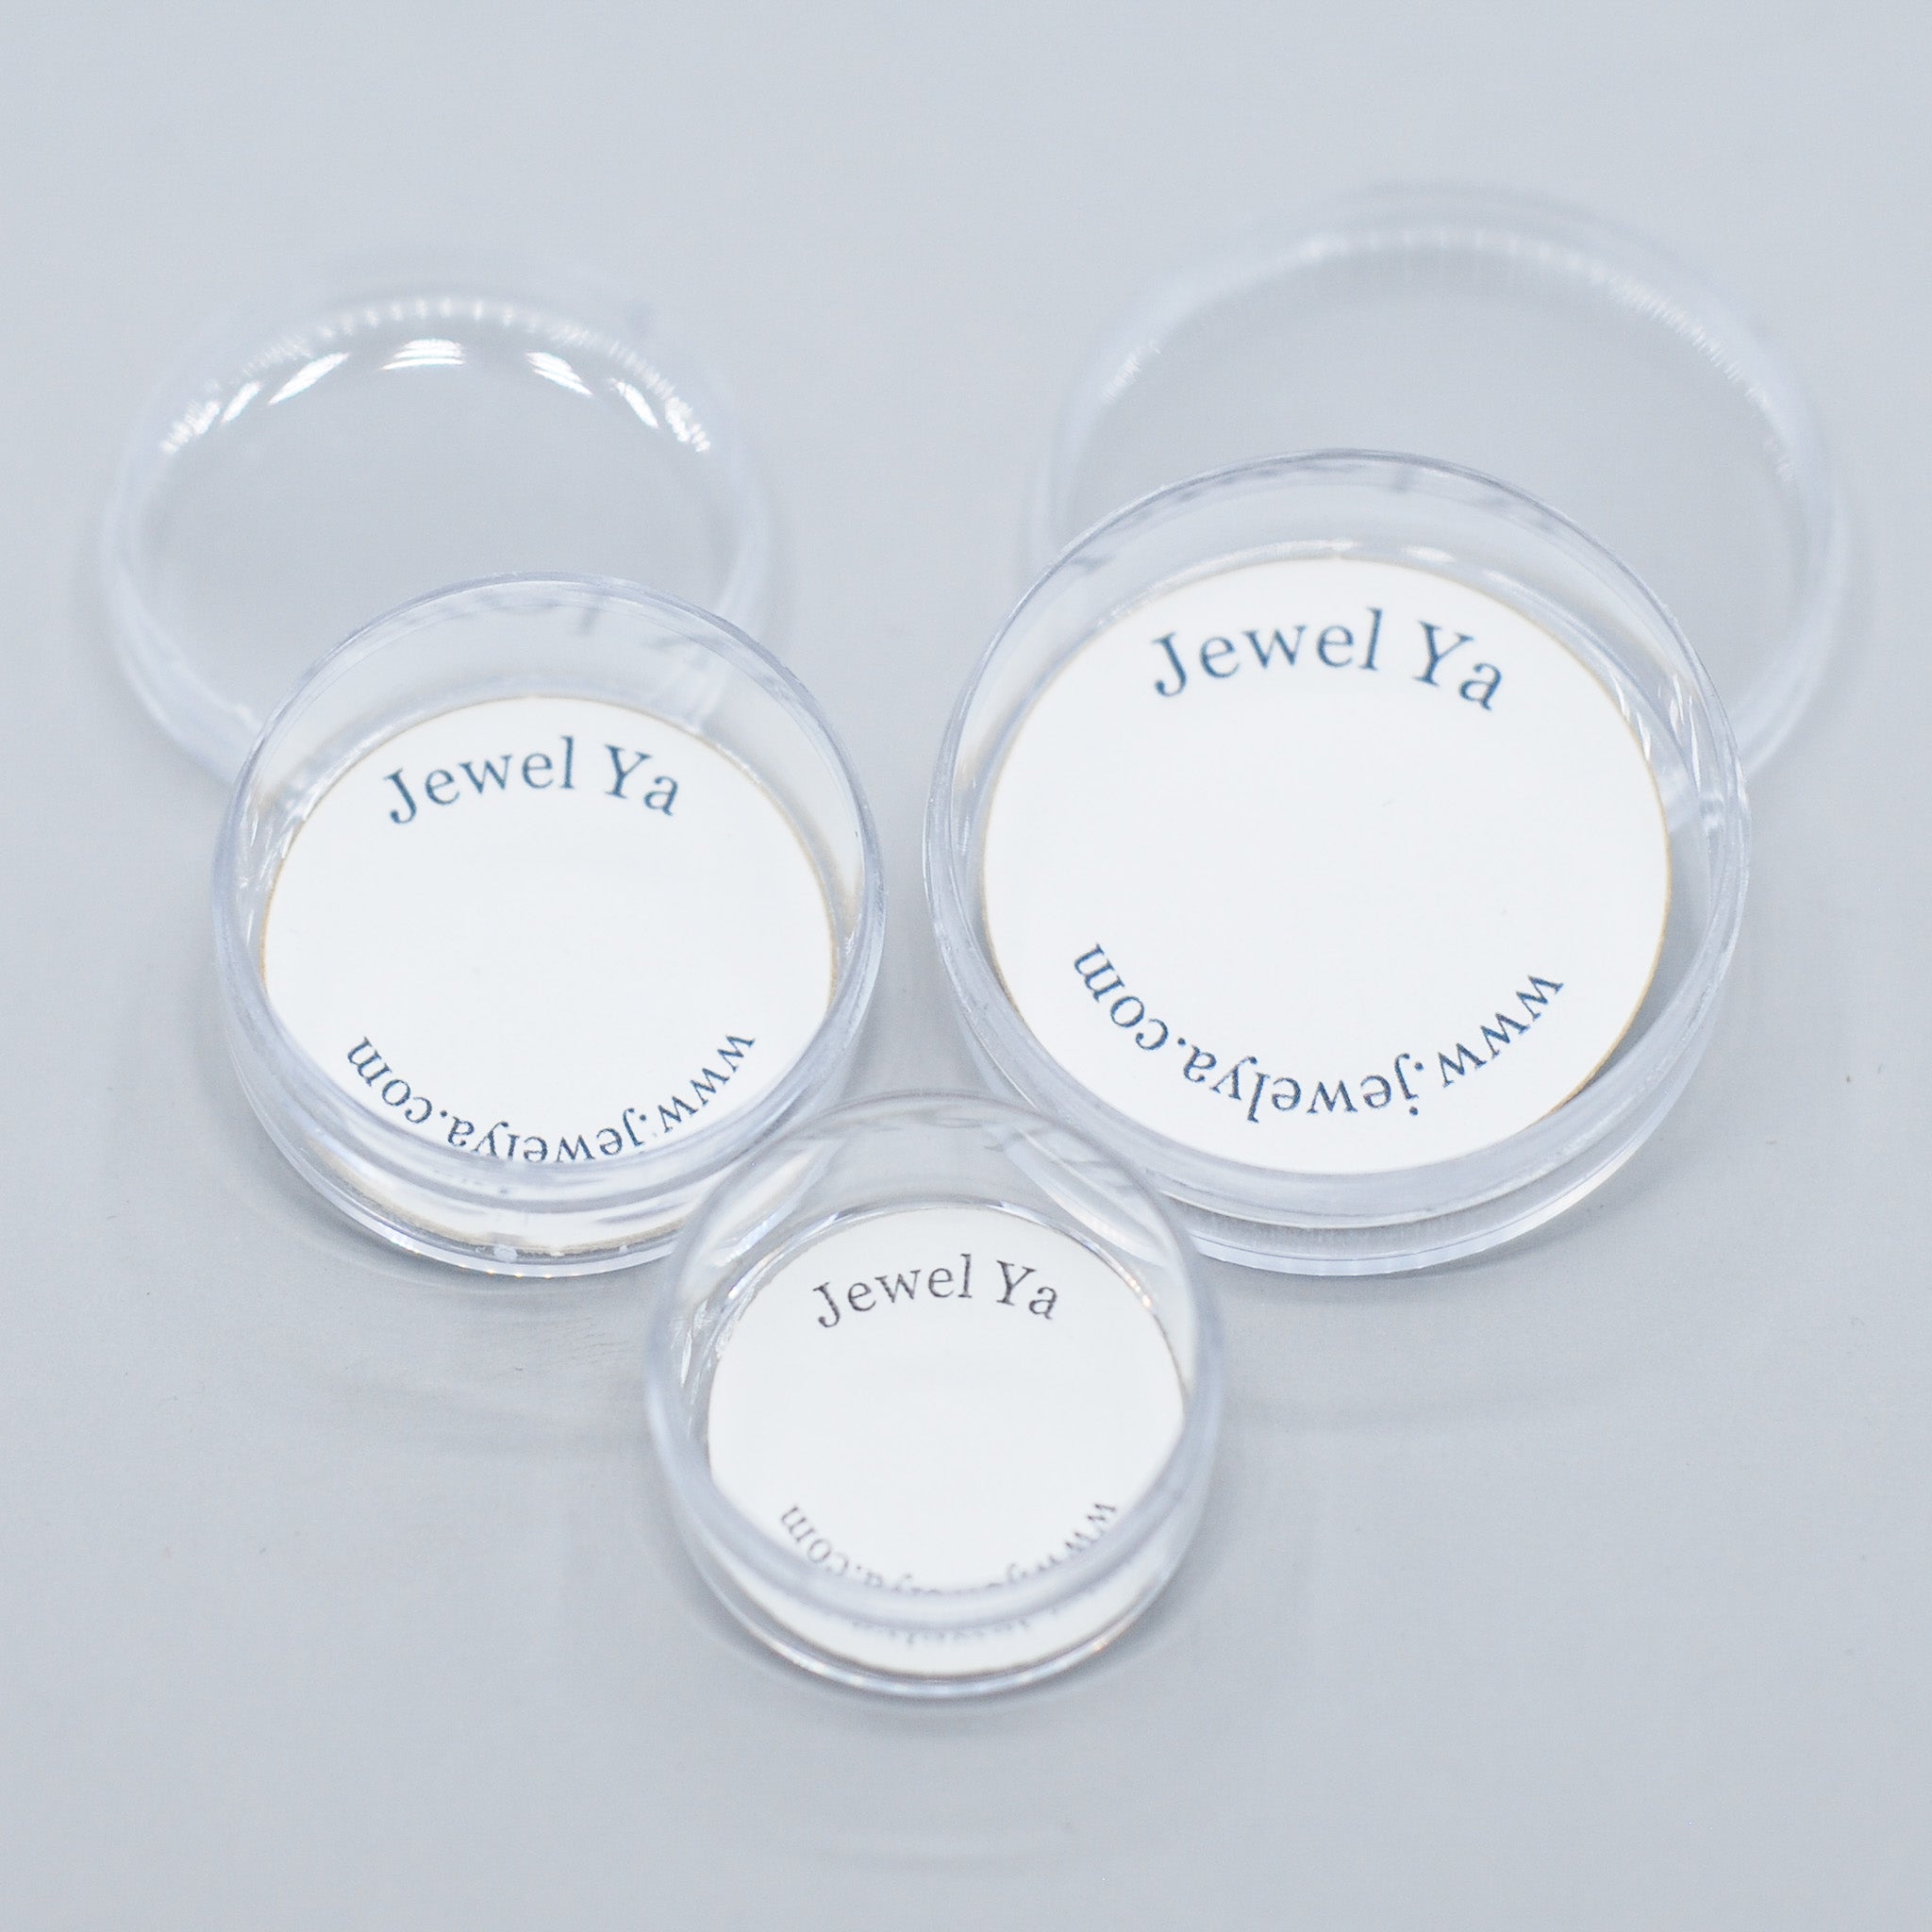 Acrylic Jewelry Storage Container - Jewel Ya